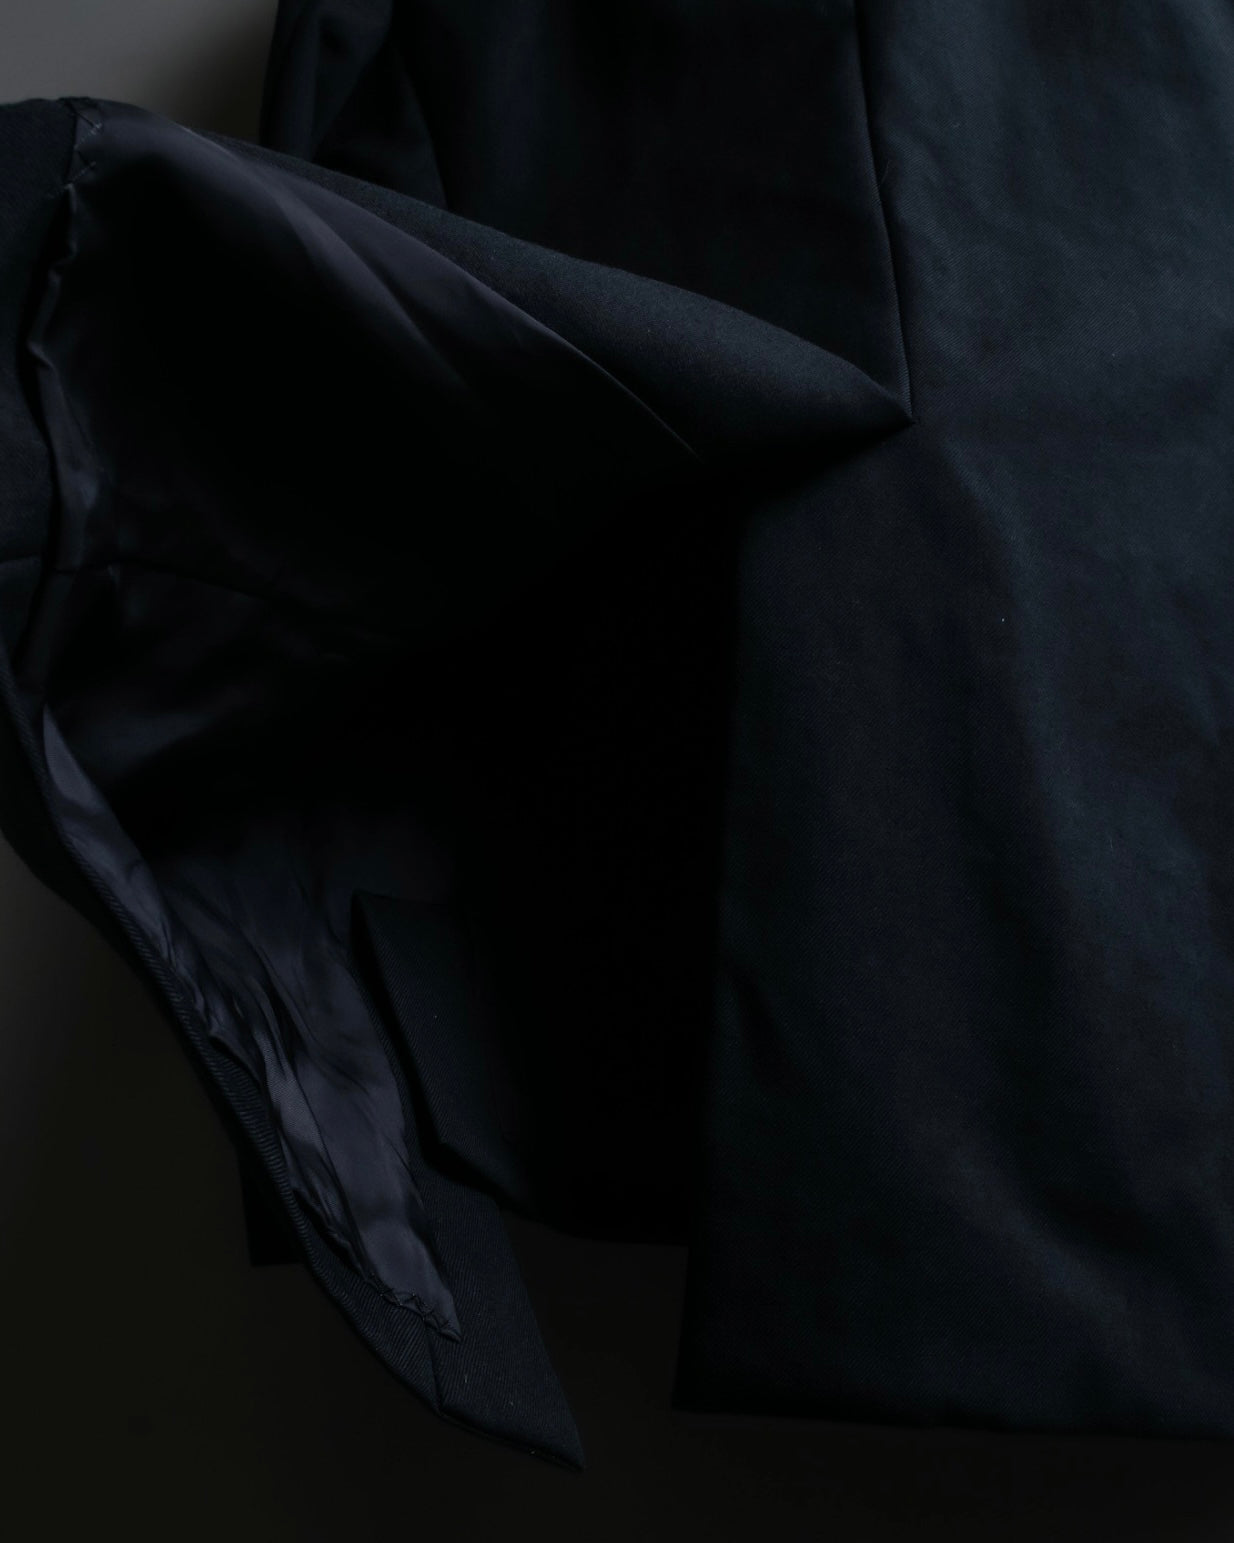 "Yohji Yamamoto +NOIR" Single high slit beautiful tailored jacket